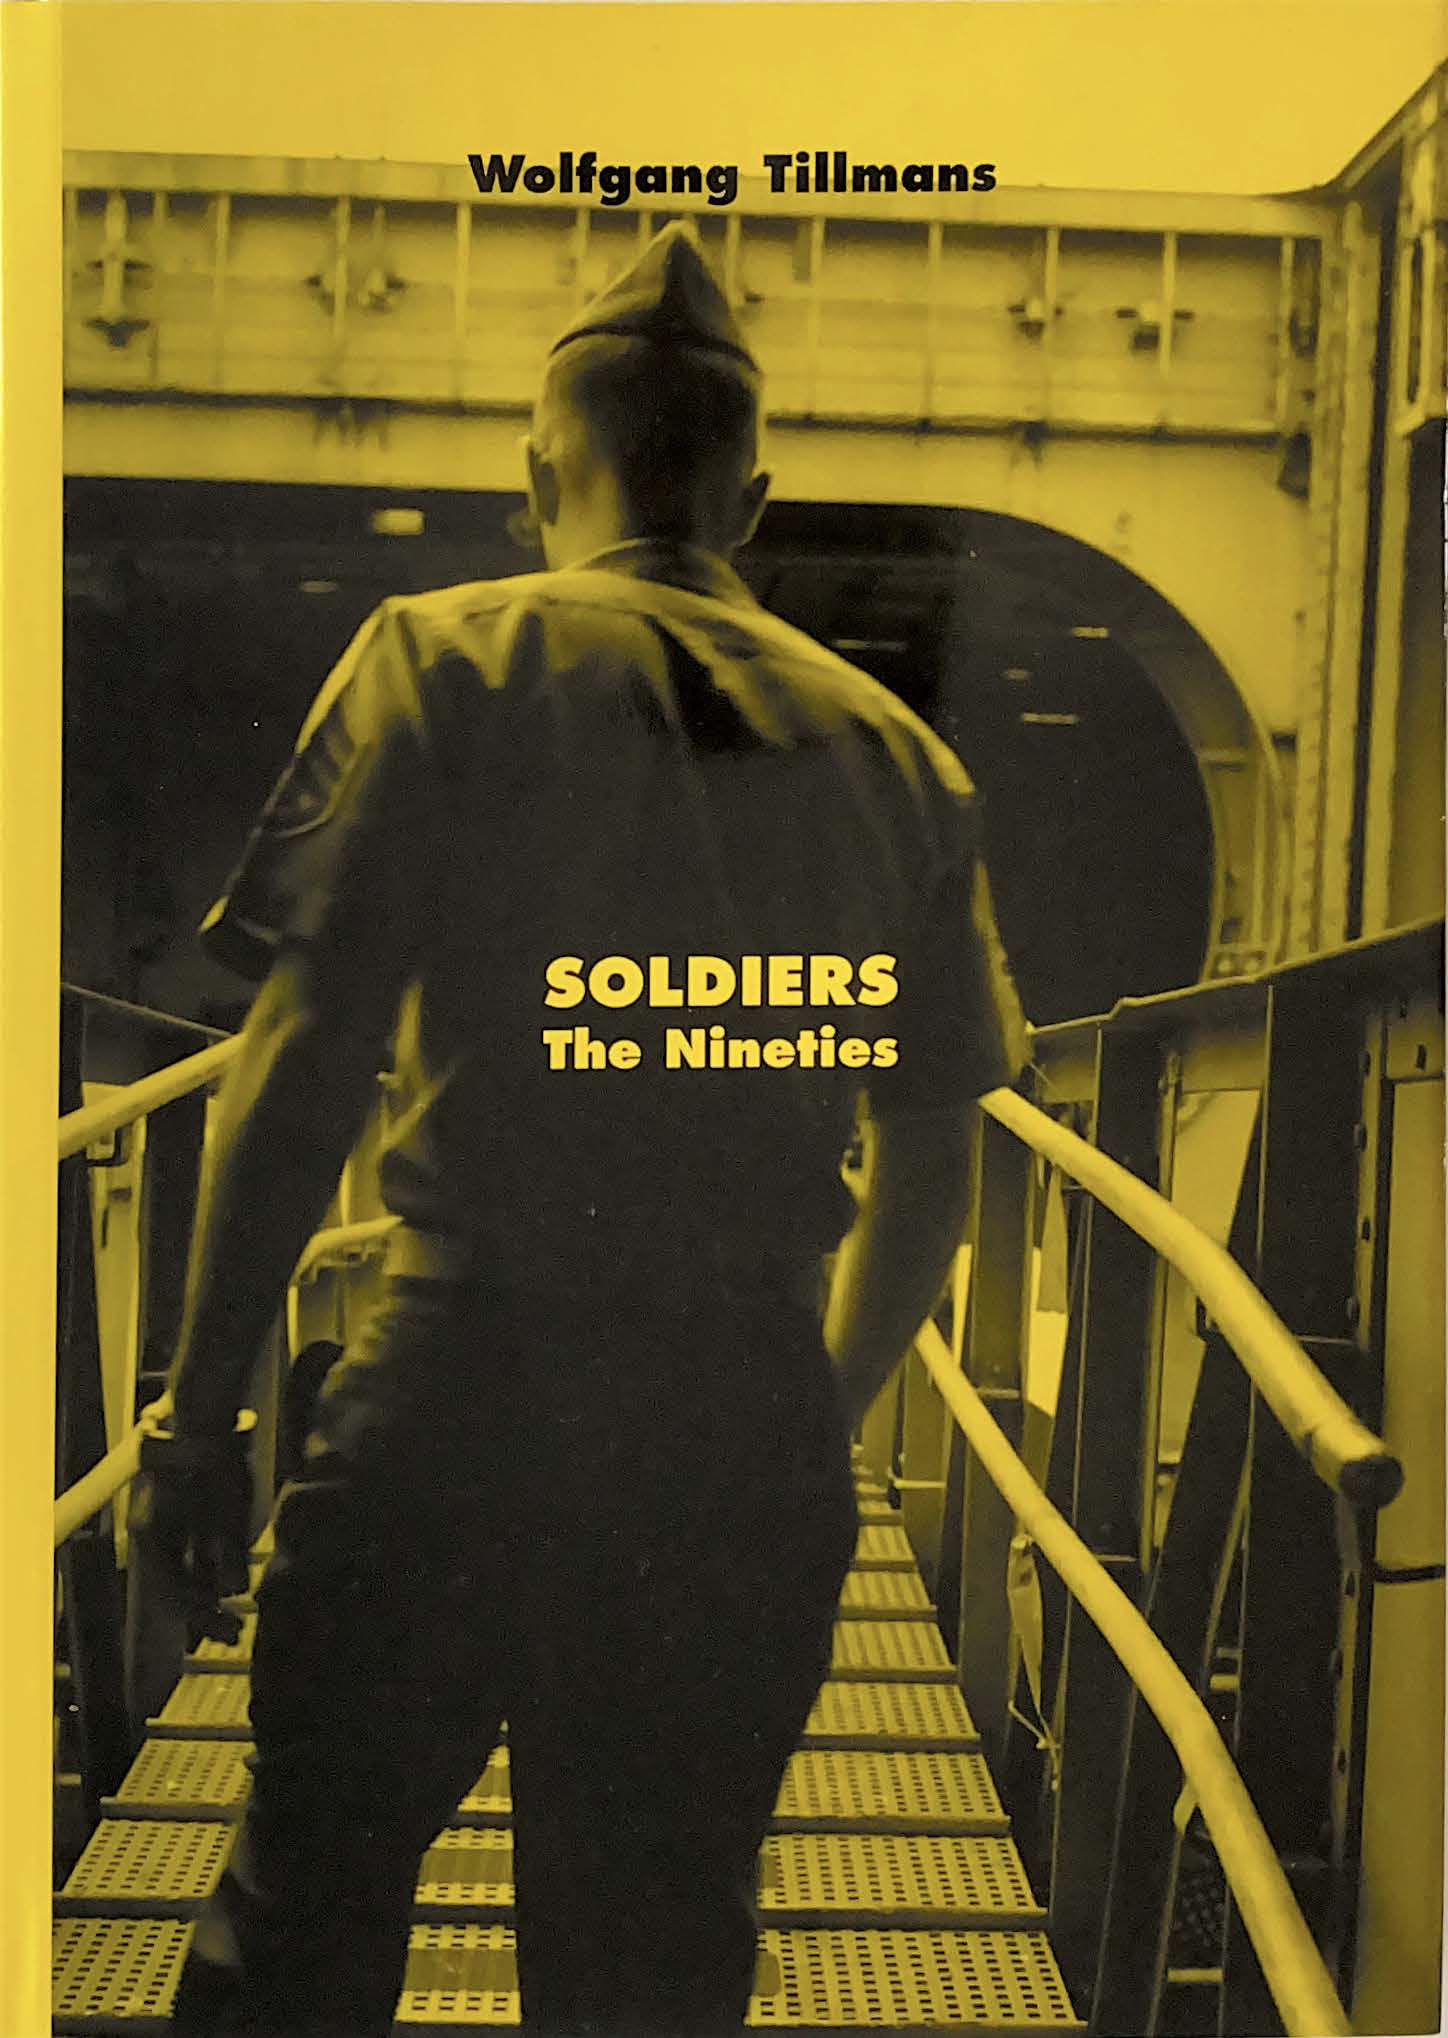 Soldiers: The Nineties